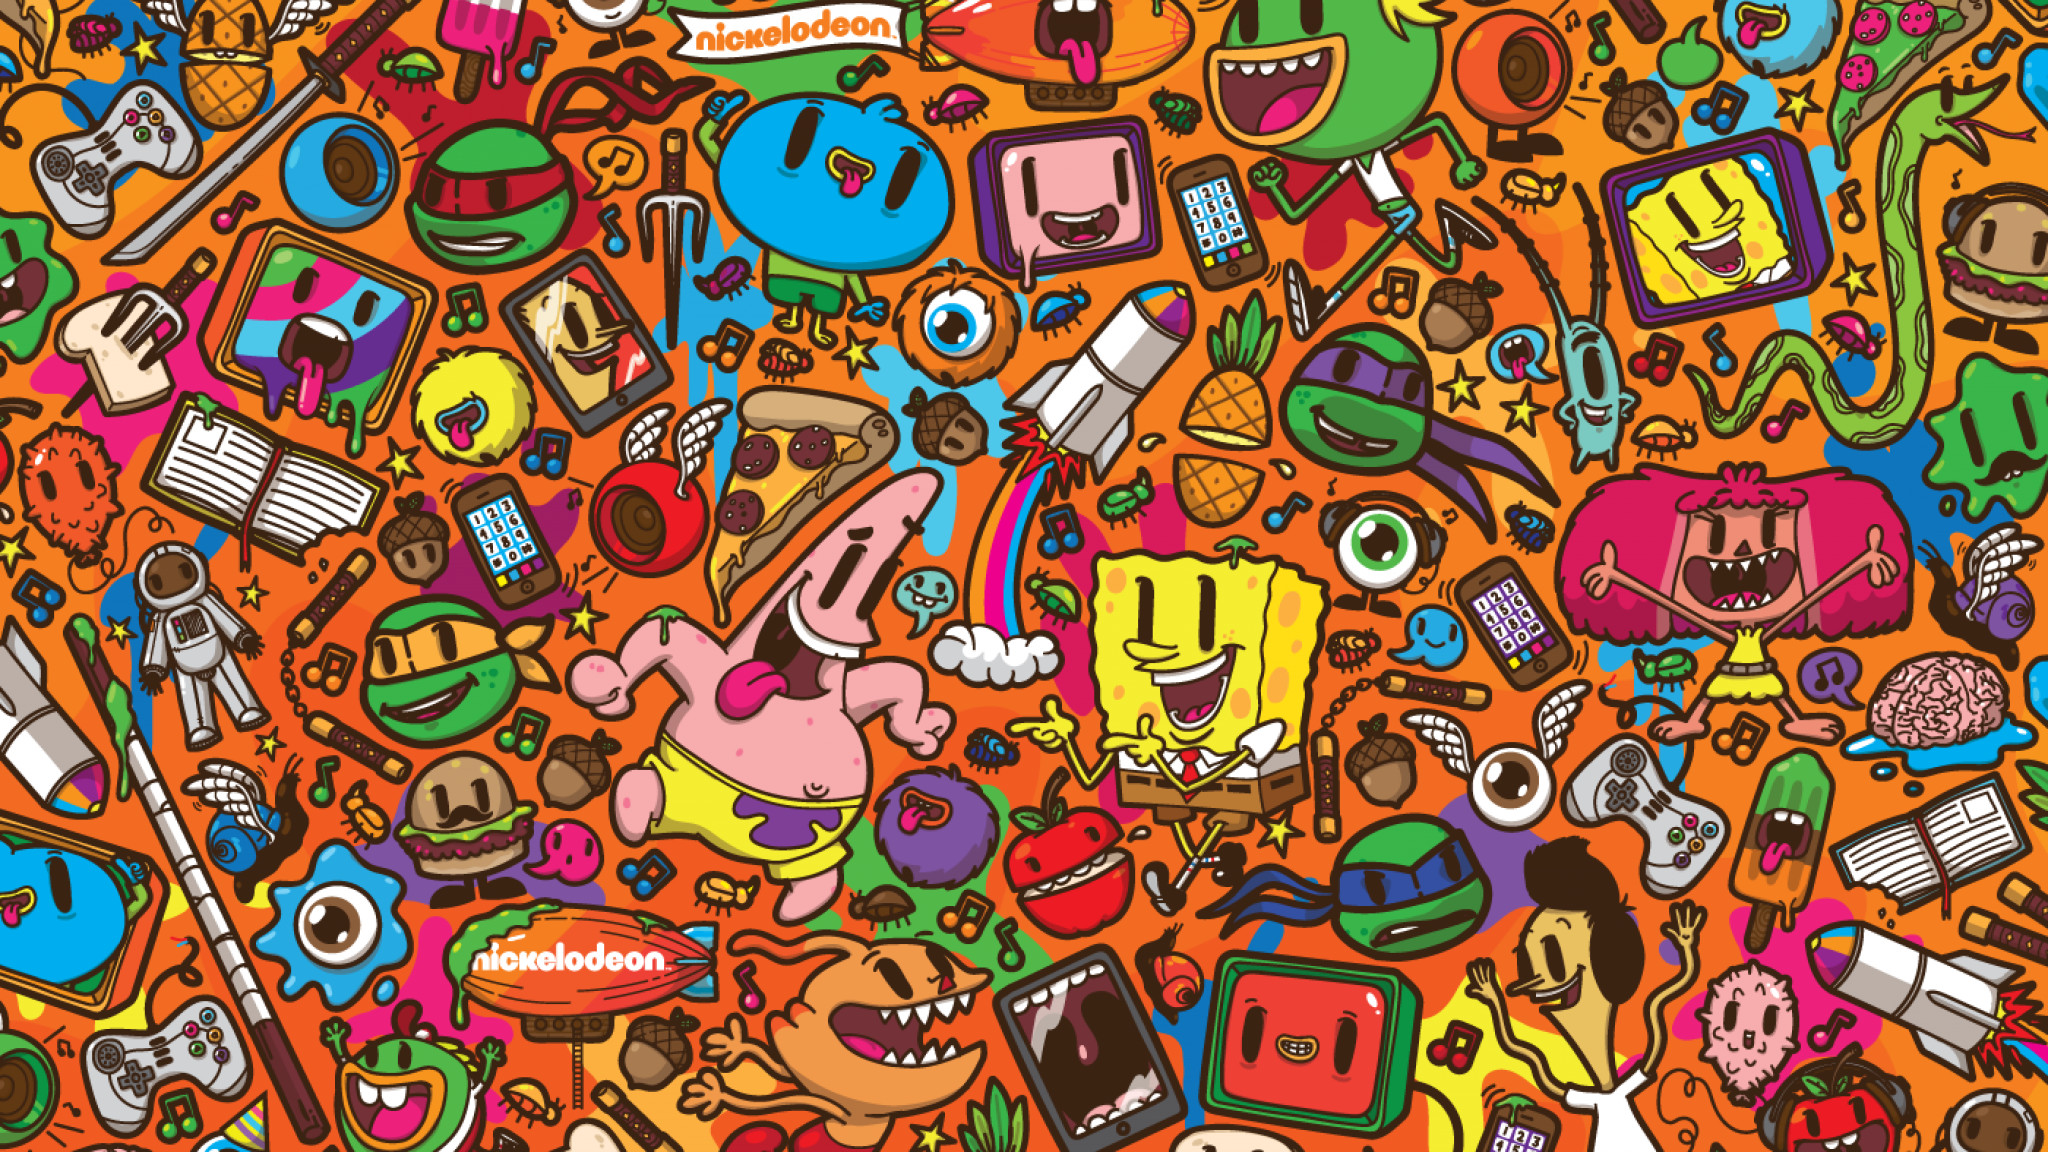 2048x1152 Patrick Star, Nickelodeon, SpongeBob, SquarePants, caricature, cartoons,  Colorful